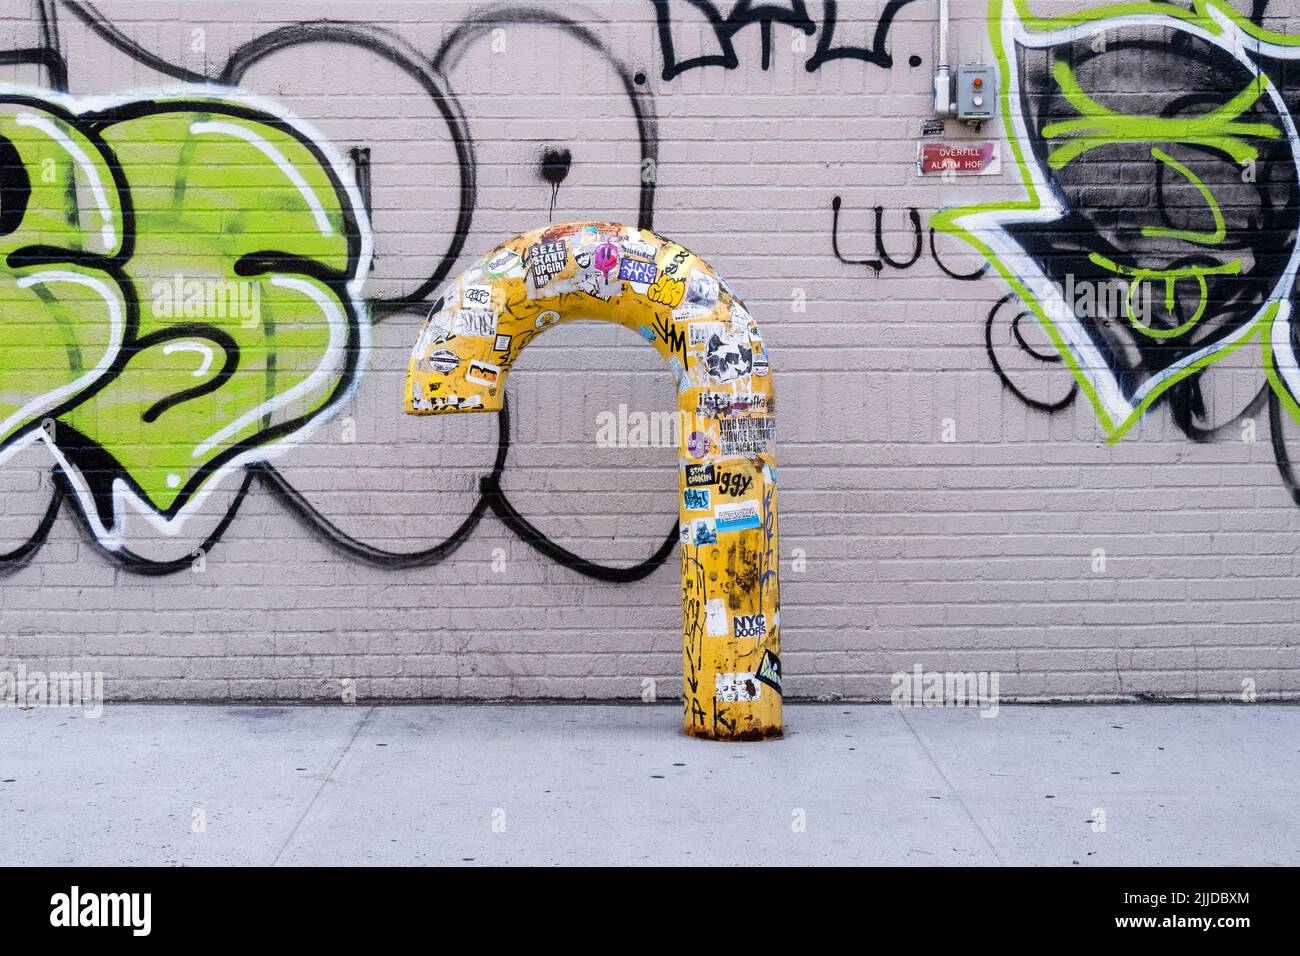 STADTLANDSCHAFT. Ein gelbes, kegelförmiges Rohr gegen eine mit Graffiti gefüllte Wand. Auf der Second Avenue in Greenwich Village. Wall. Stockfoto